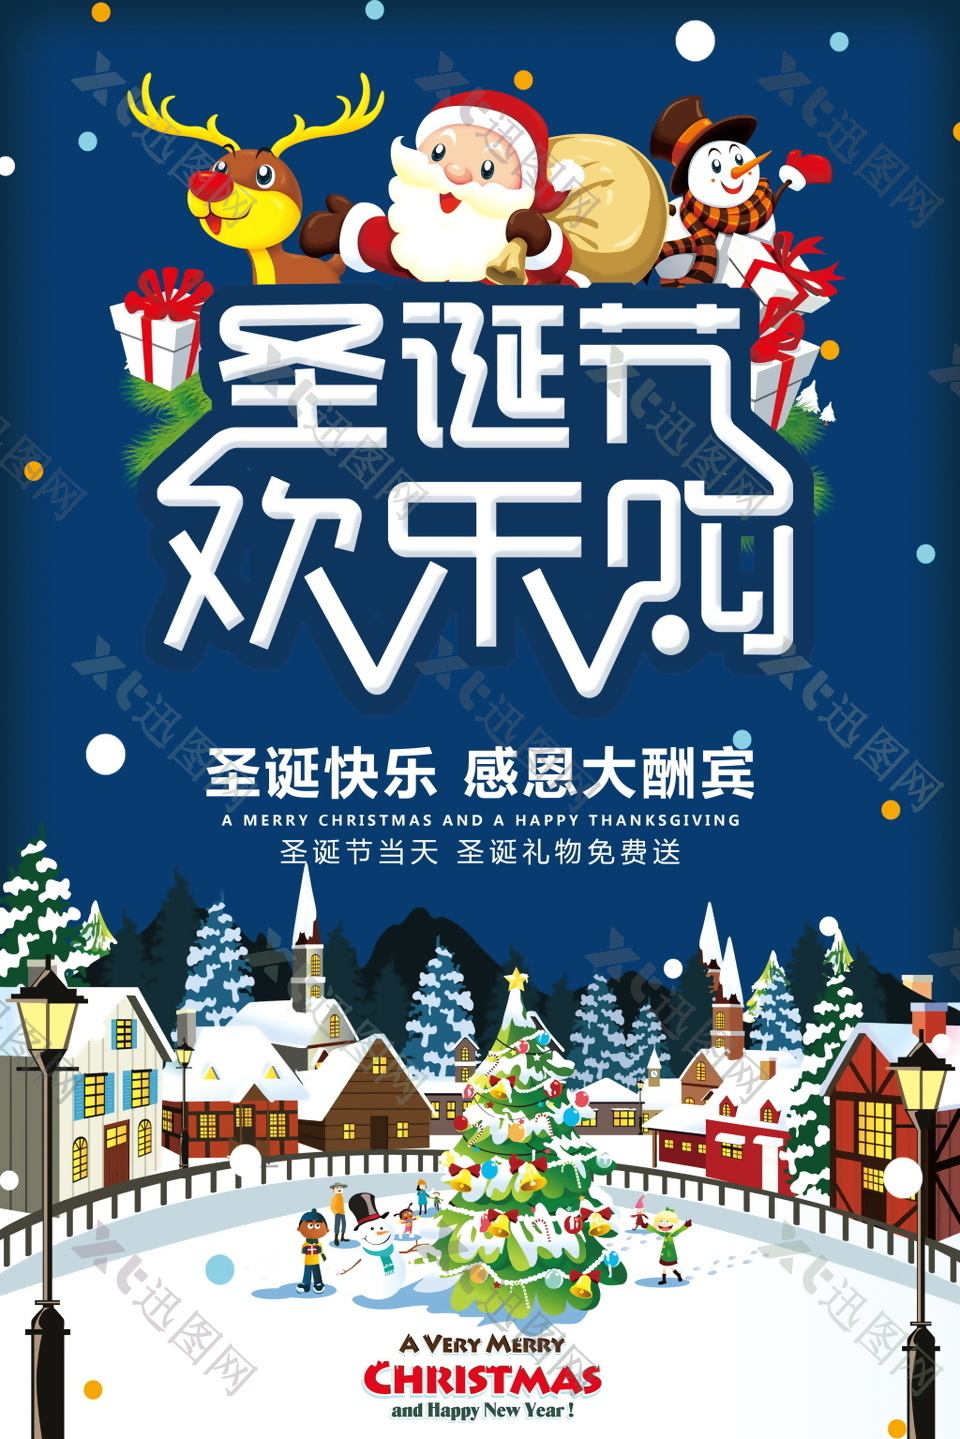 2017圣诞快乐感恩大酬宾海报设计